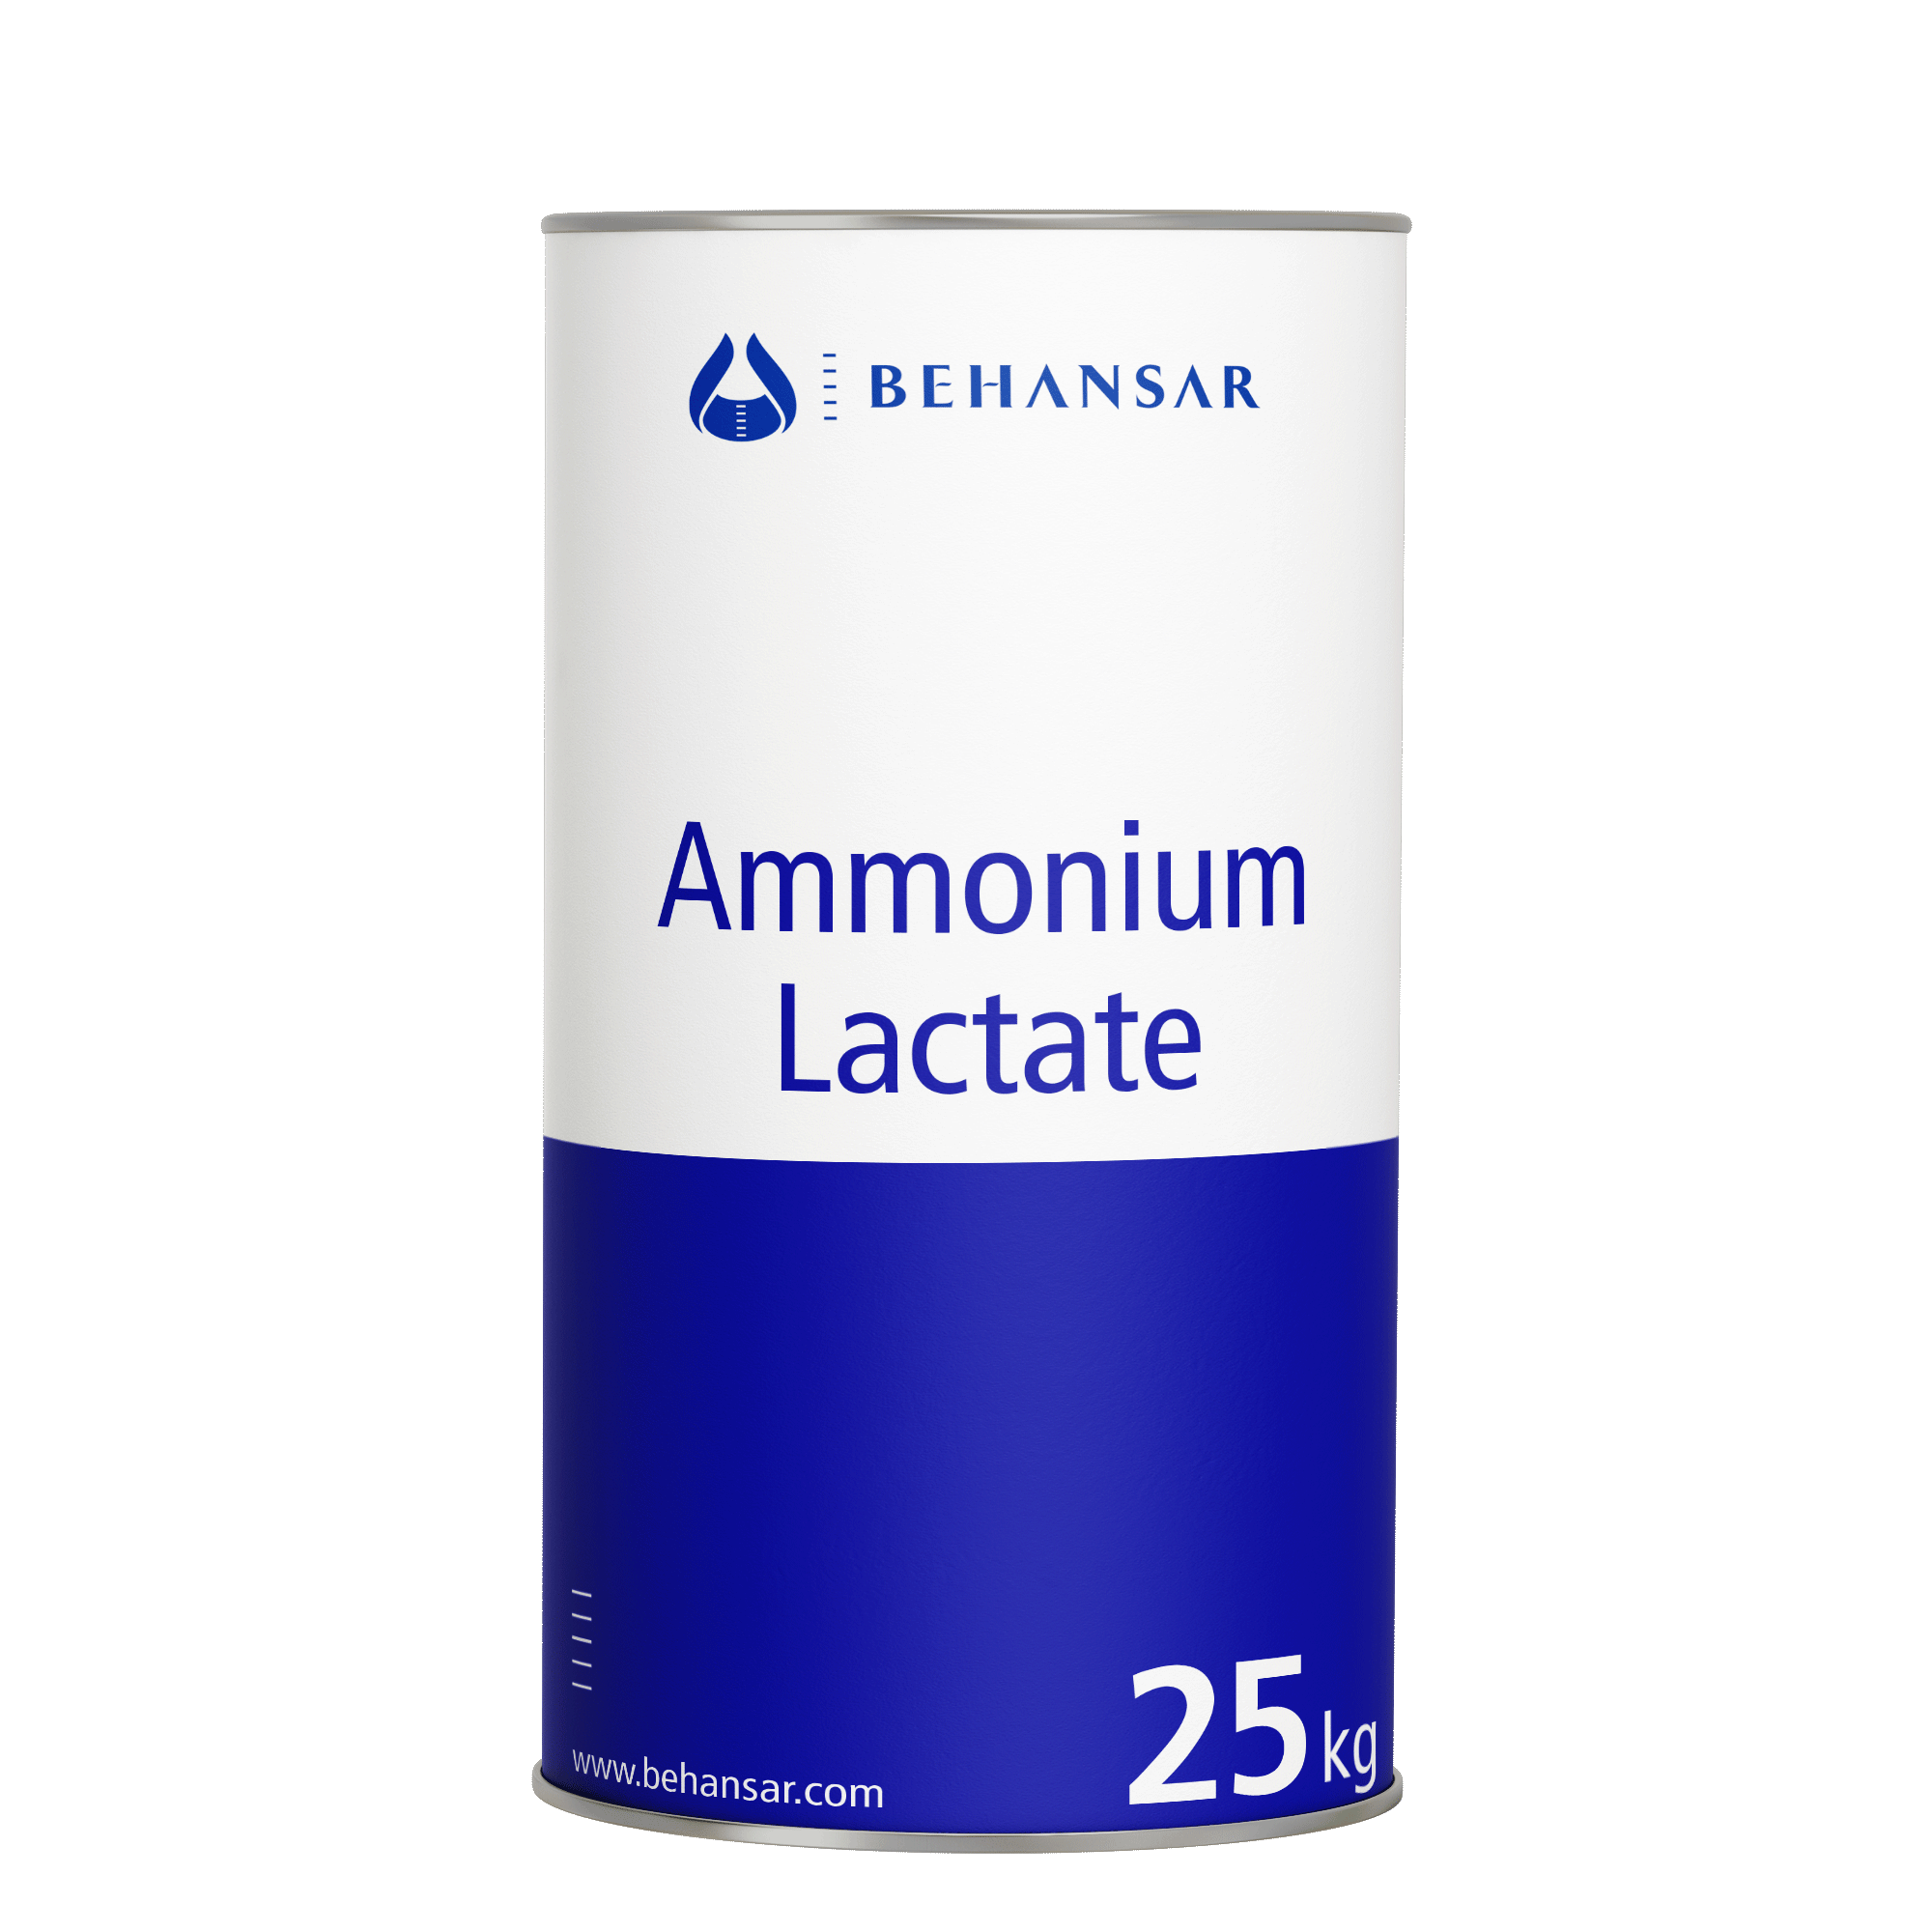 آمونیوم لاکتات سولوشن یکی از تولیدات شرکت بهانسار است